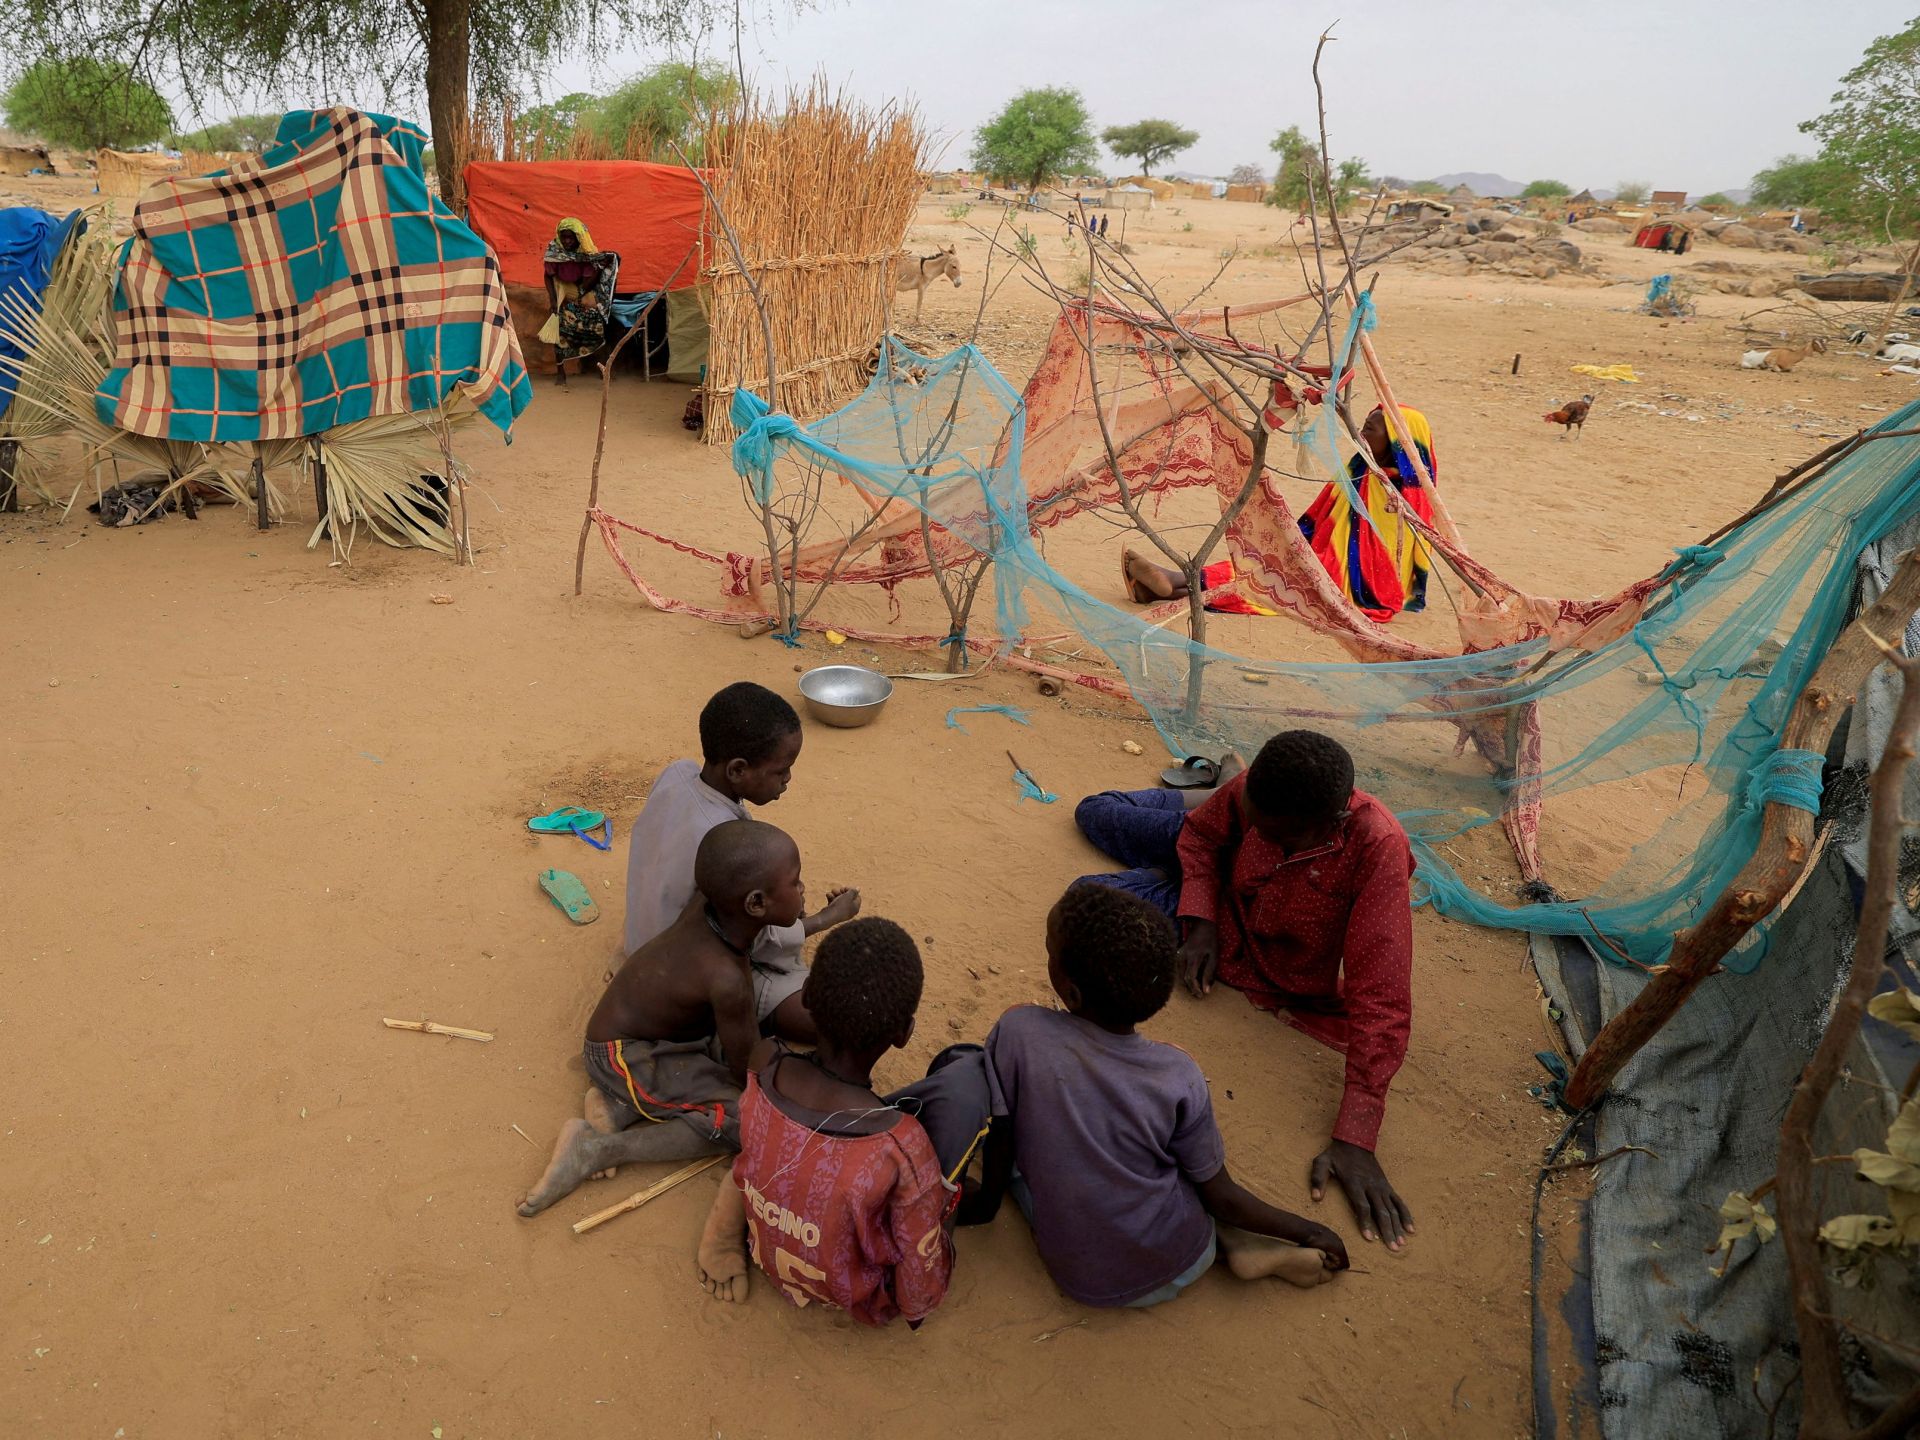 يونيسيف: حرب السودان تعرض 24 مليون طفل للخطر | أخبار – البوكس نيوز